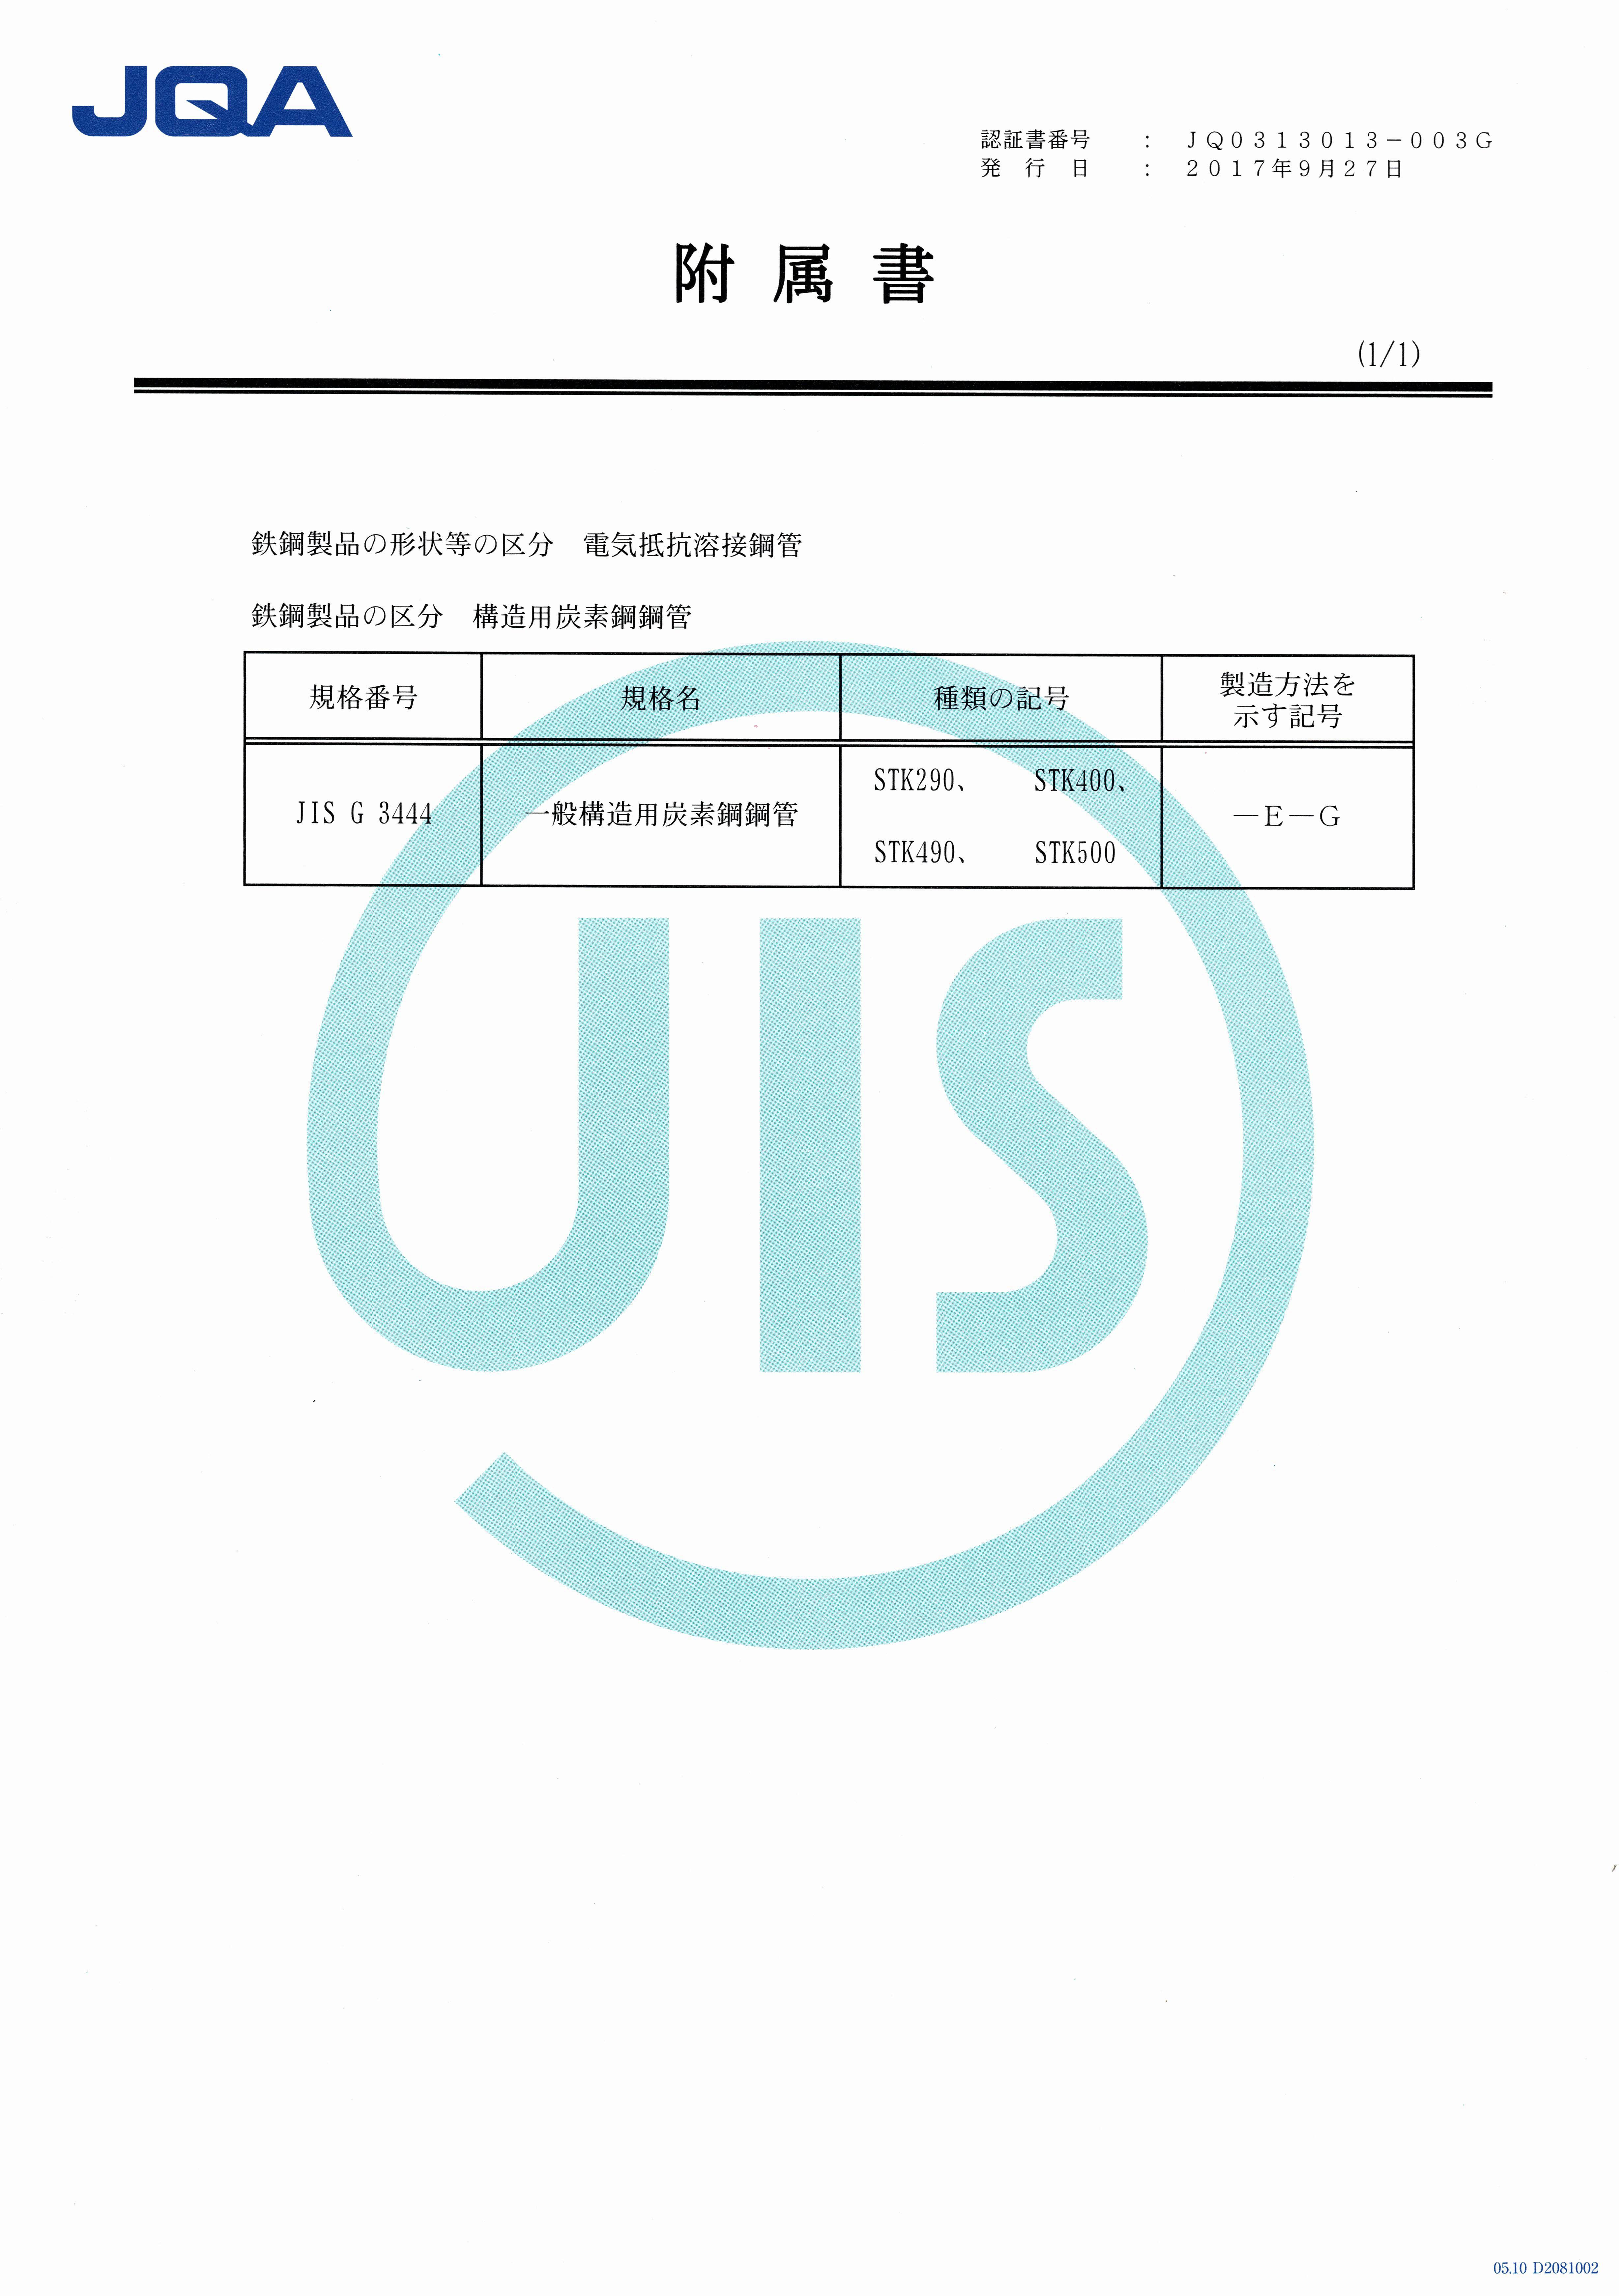 JIS Certificate - P2